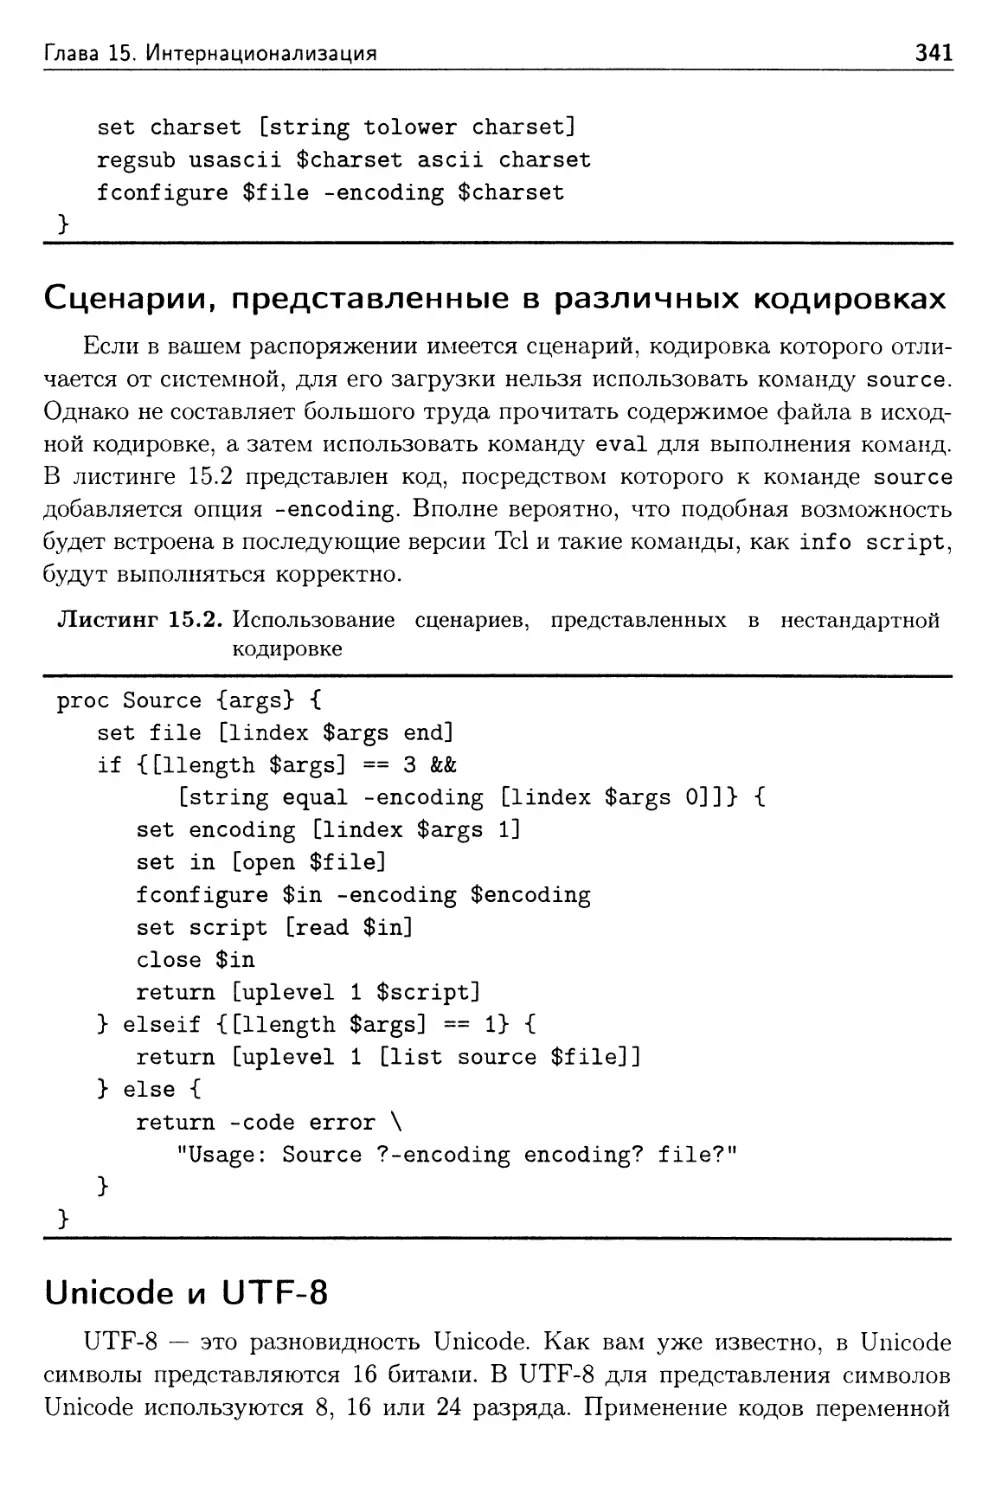 Сценарии, представленные в различных кодировках
Unicode и UTF-8